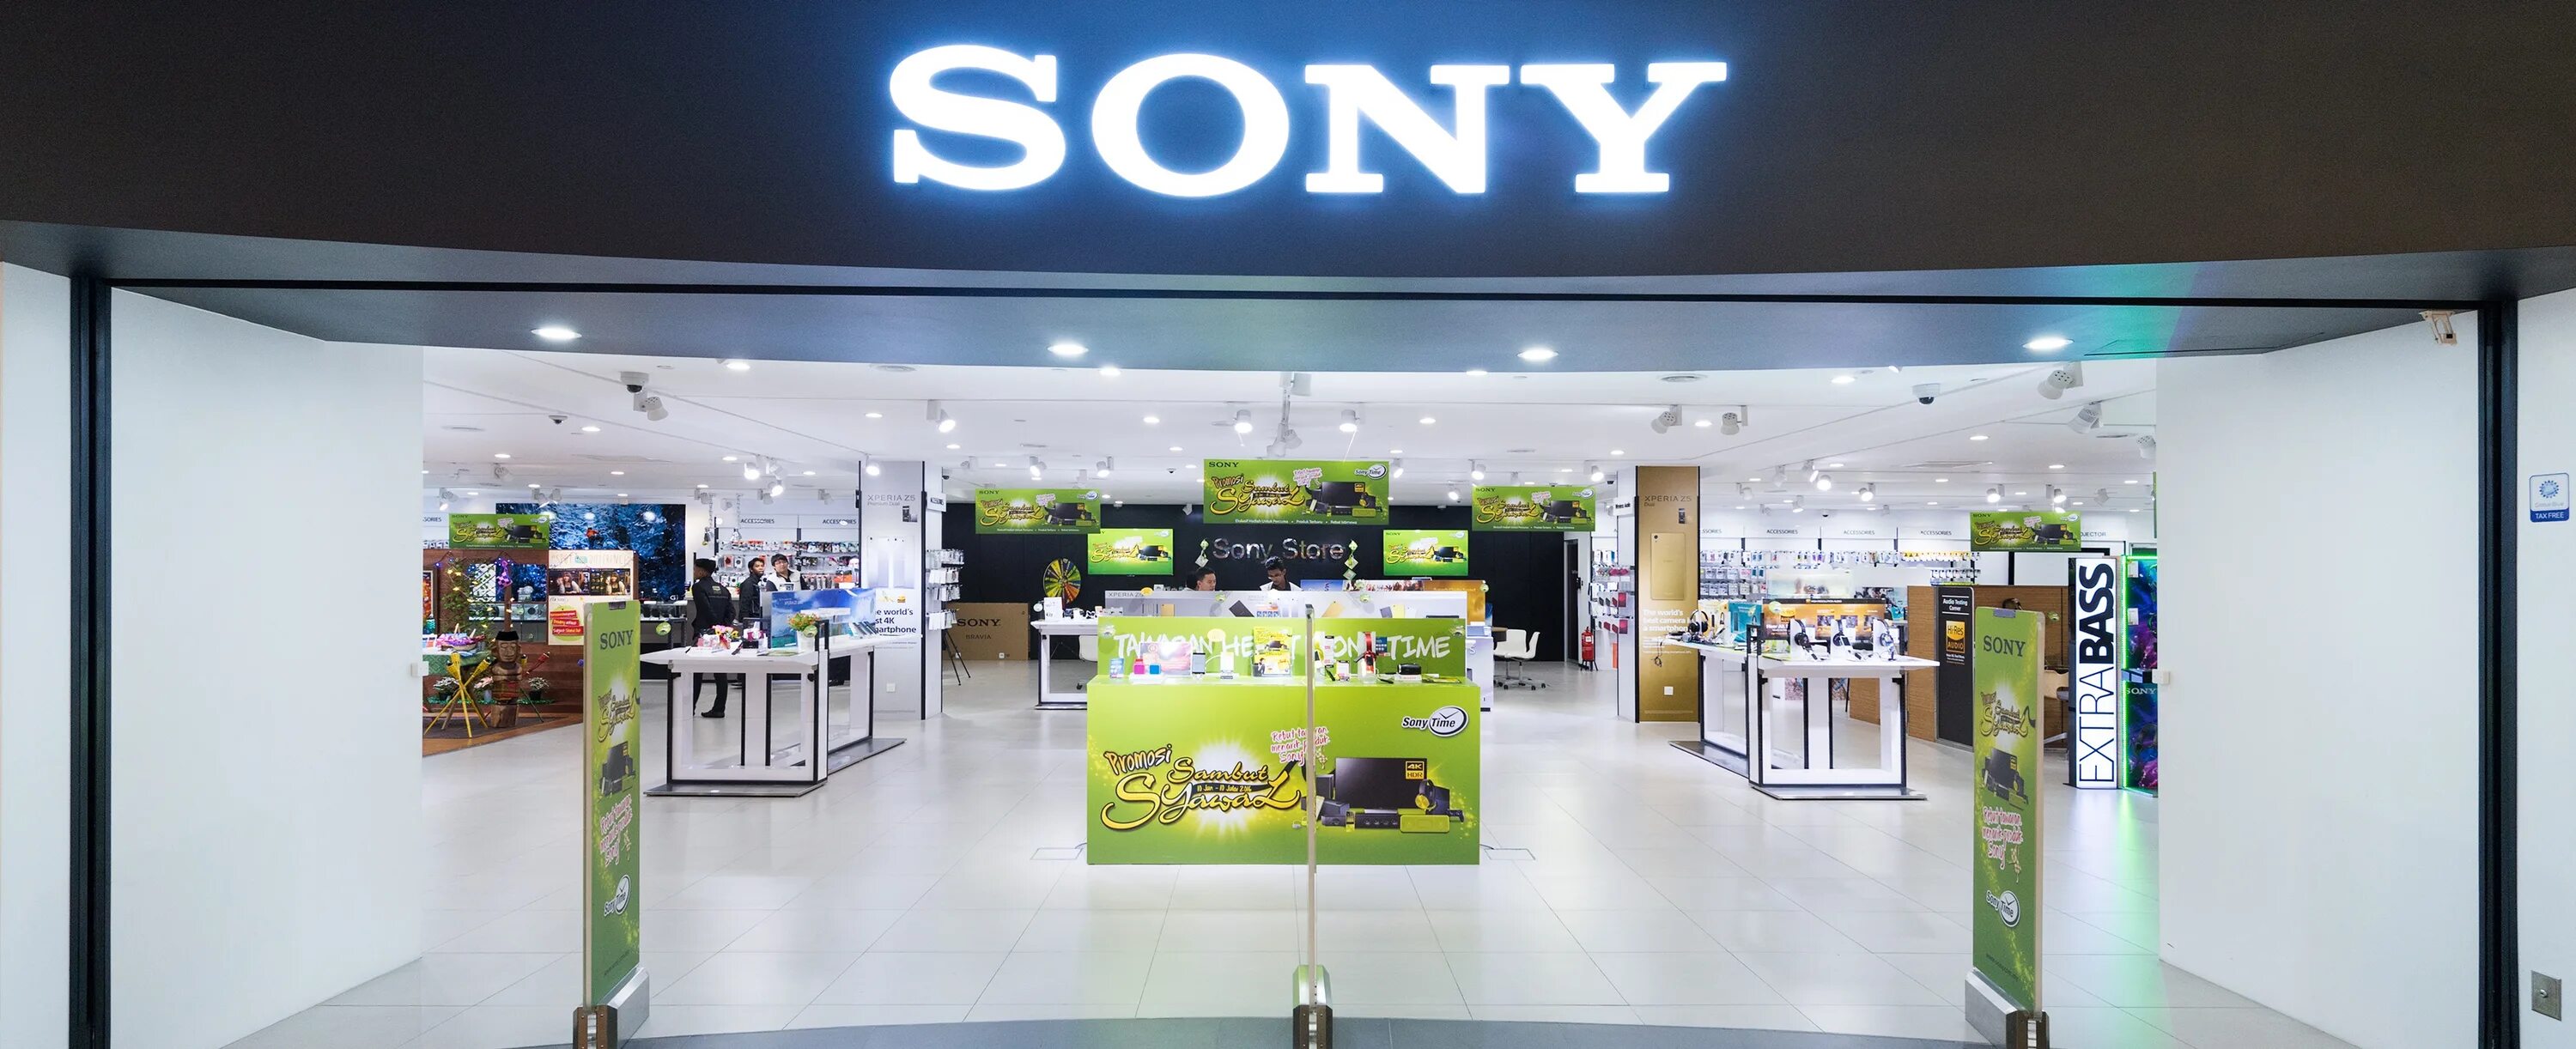 Купить сони в магазине. Магазин Sony. Sony Malaysia. Сони фирменный магазин. Сони центр в Москве.